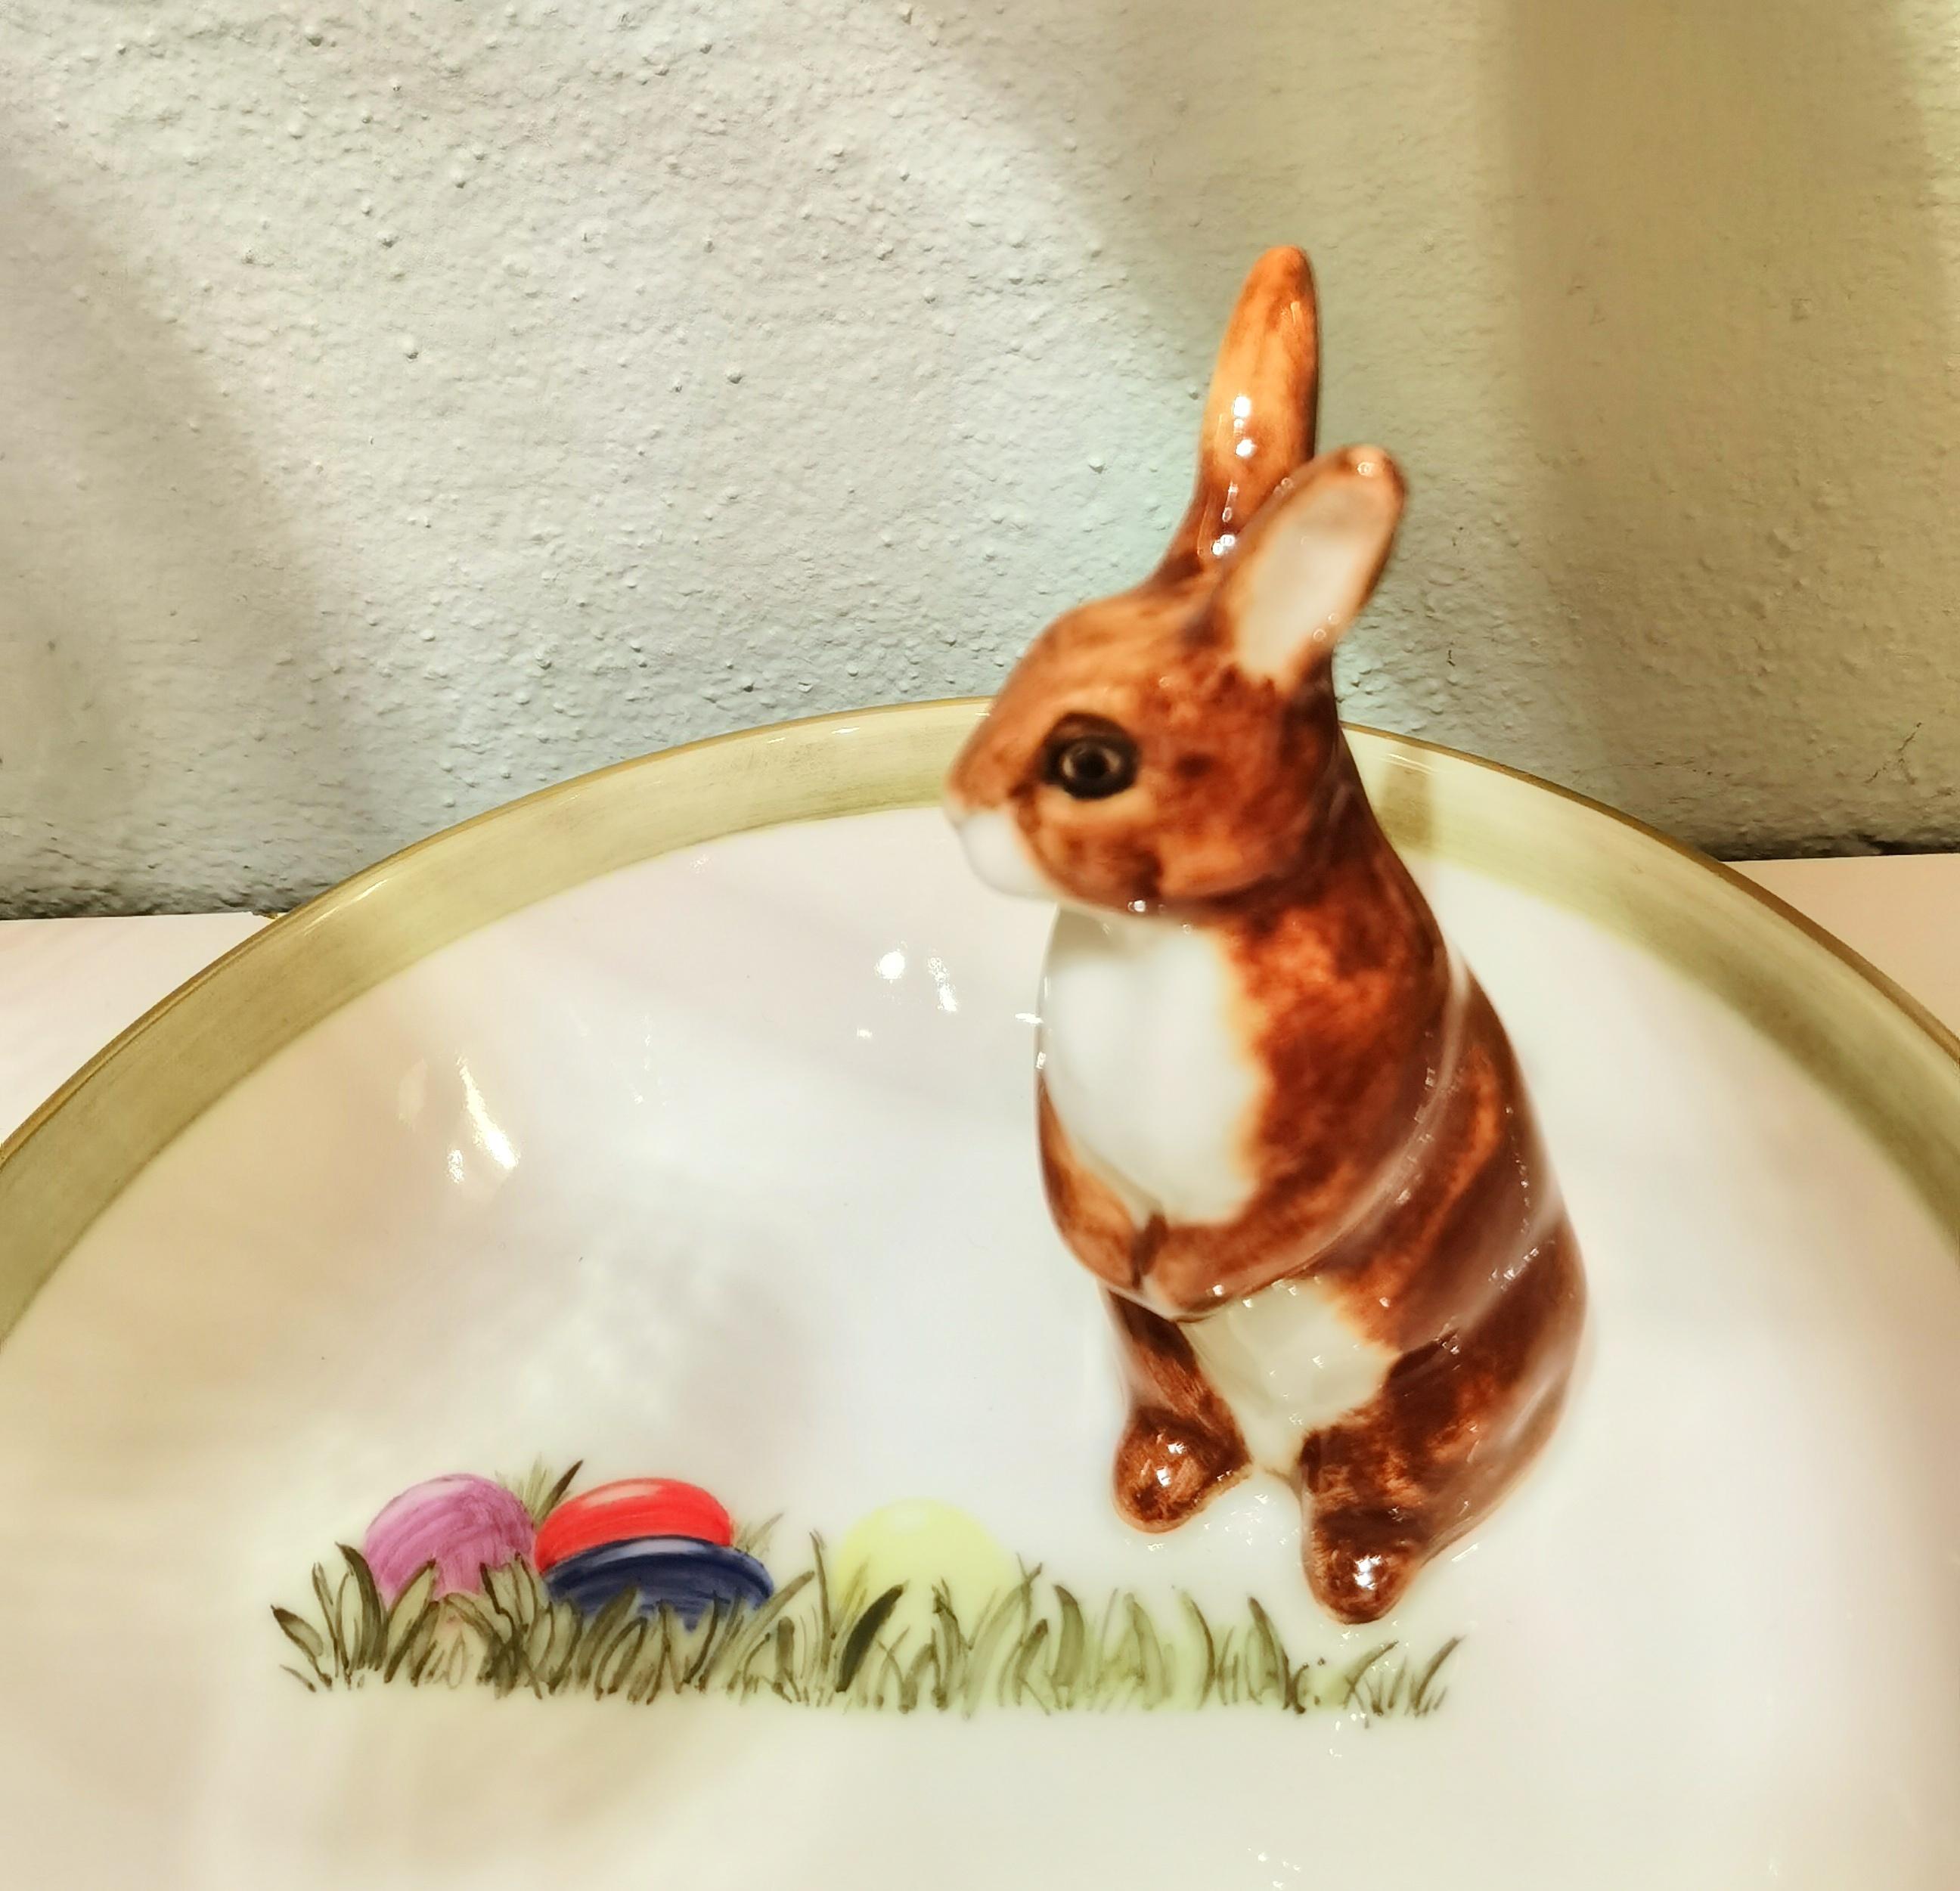 Vollständig handgefertigte Porzellanschale mit einer freihändig gemalten naturalistischen Hasenfigur in brauner Farbe im Landhausstil. Der Hase sitzt an der Seite der Schale, um Nüsse oder Süßigkeiten zu dekorieren. Freihändig lackiert mit farbigen